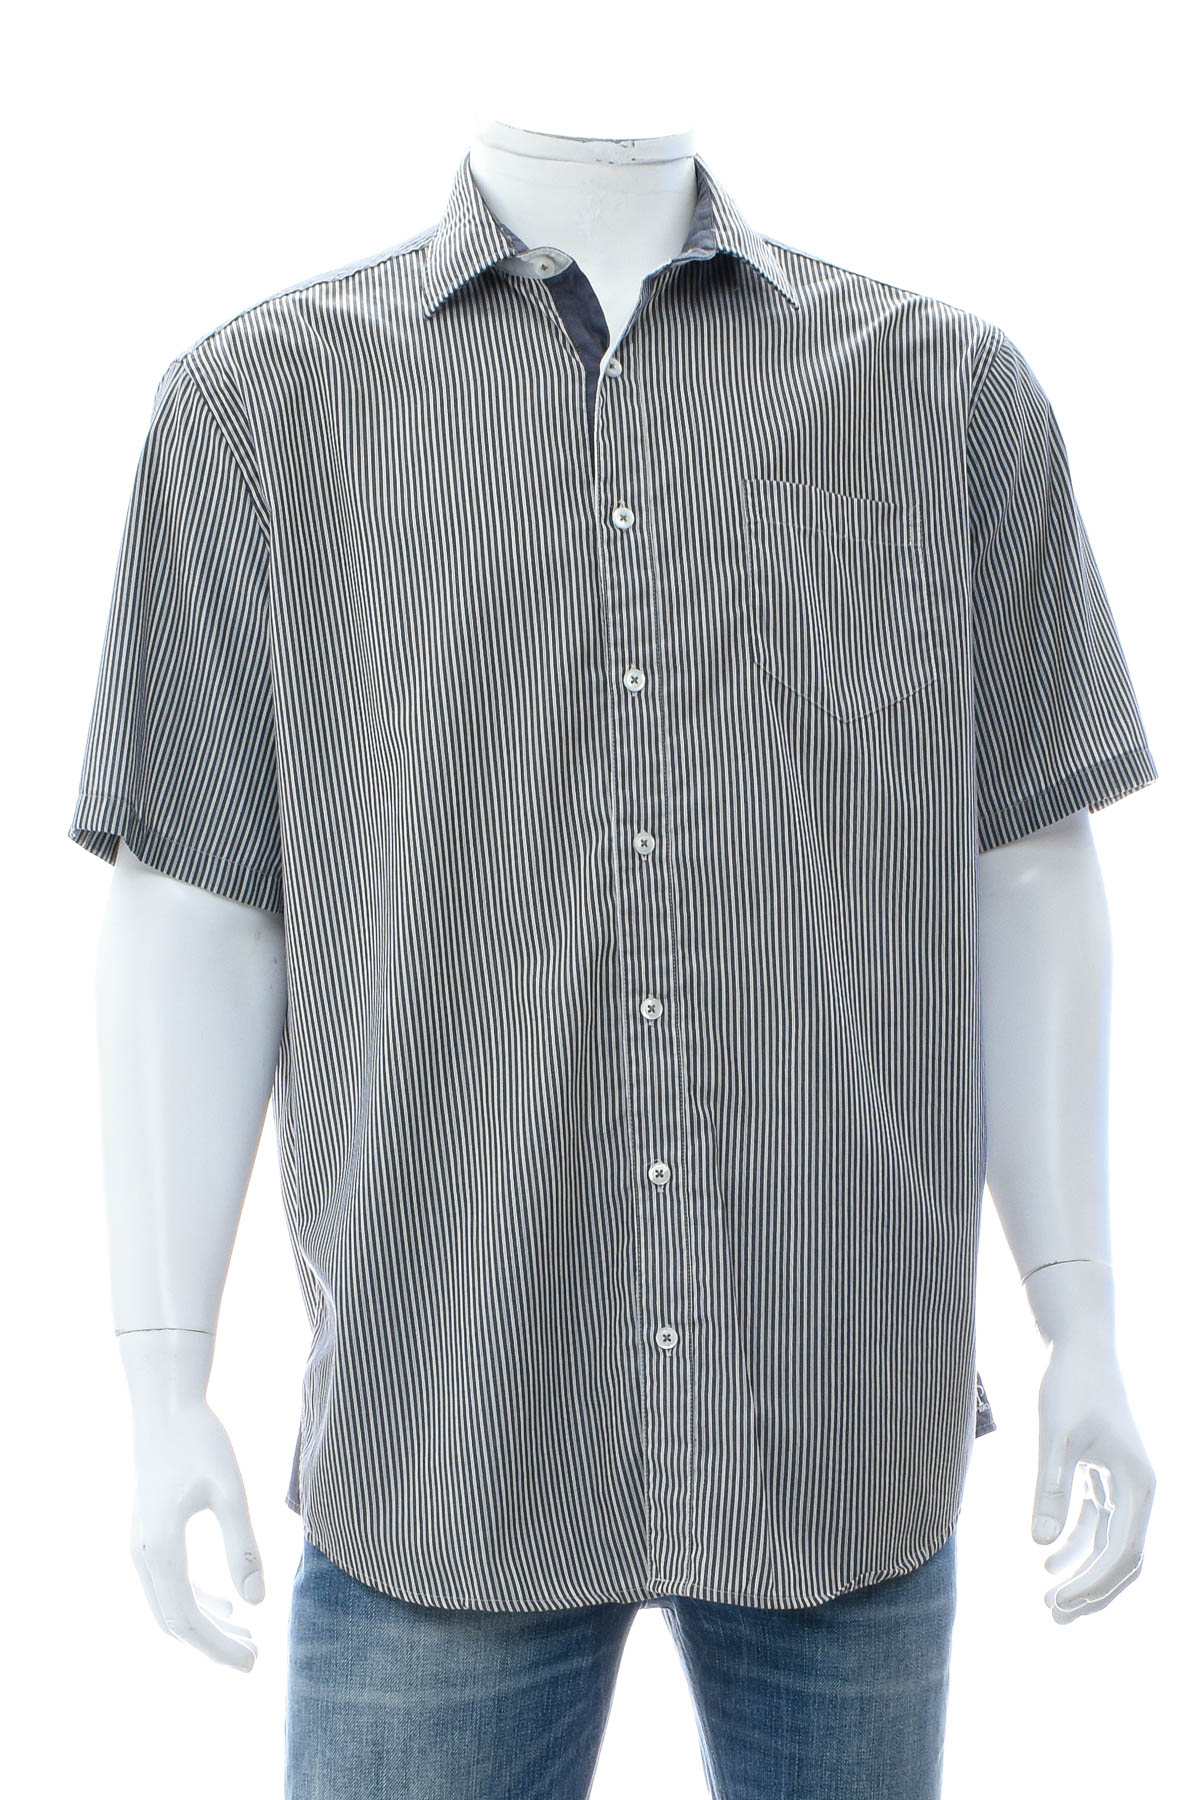 Ανδρικό πουκάμισο - JP - 0